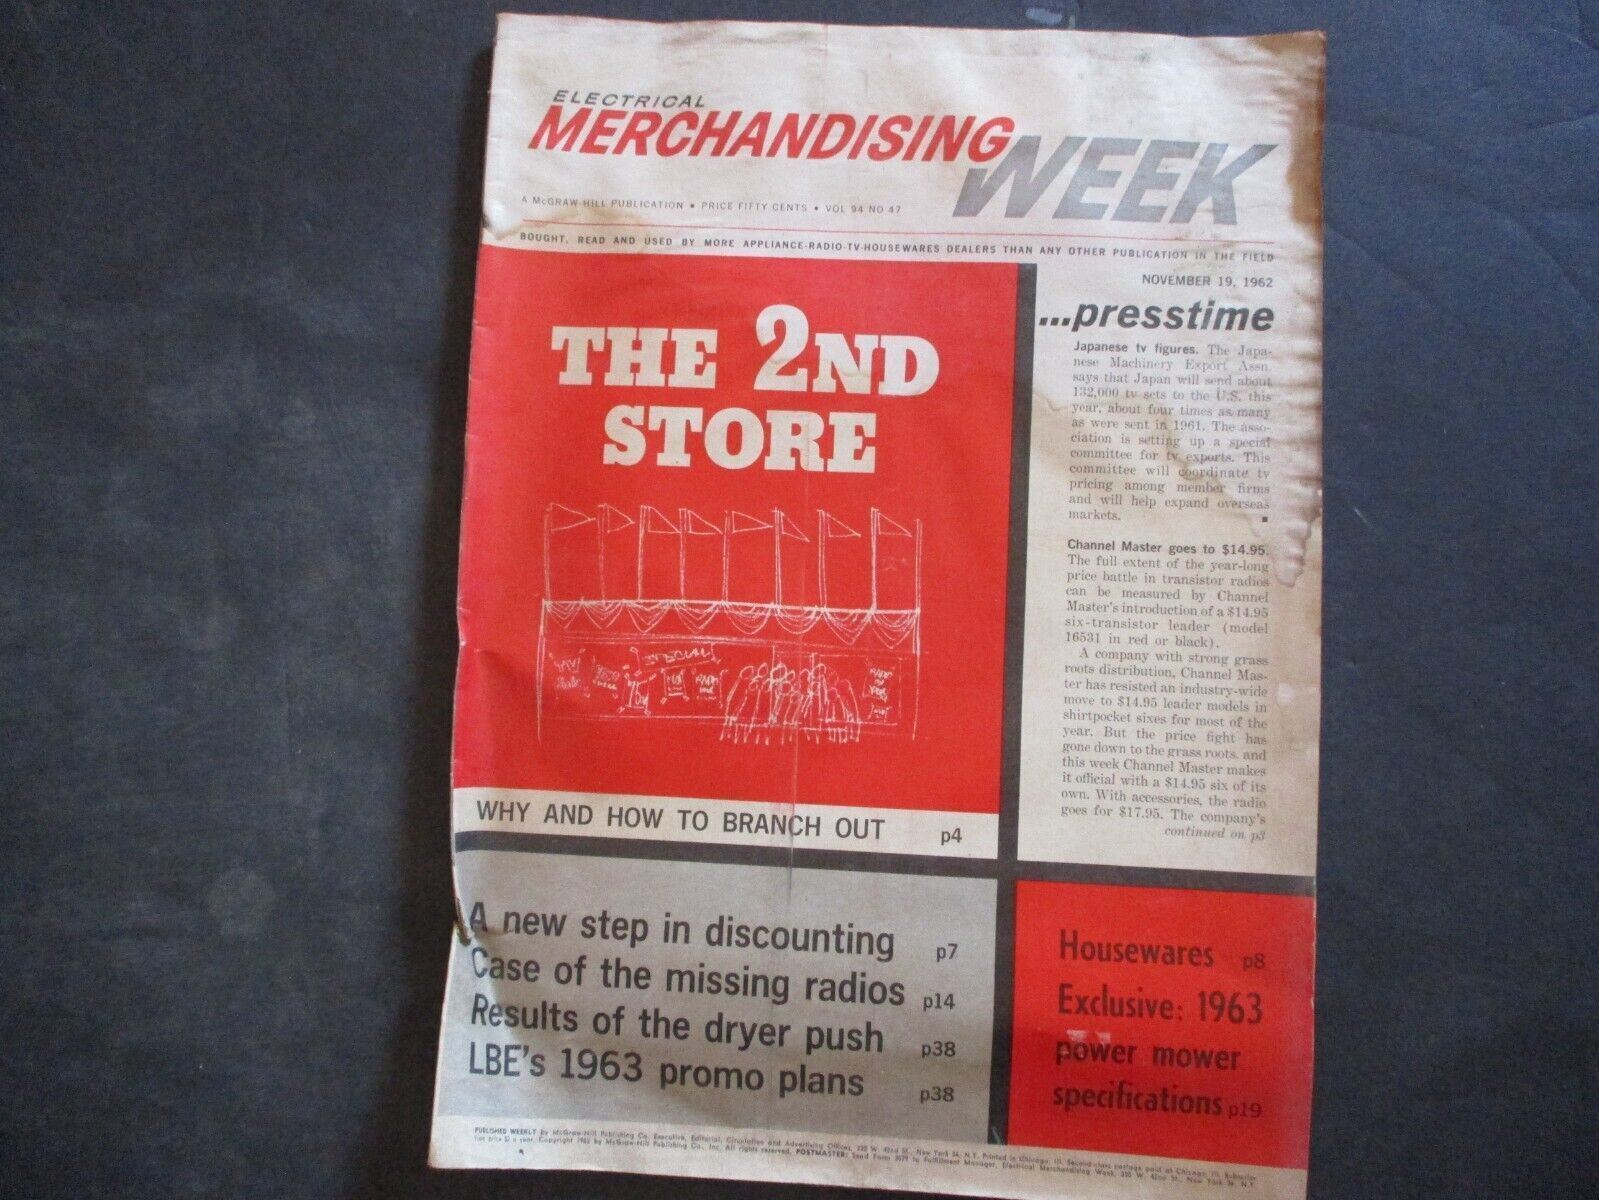 November 19, 1962 Electrical Merchandising Week vintage newspaper vol. 94 no. 47